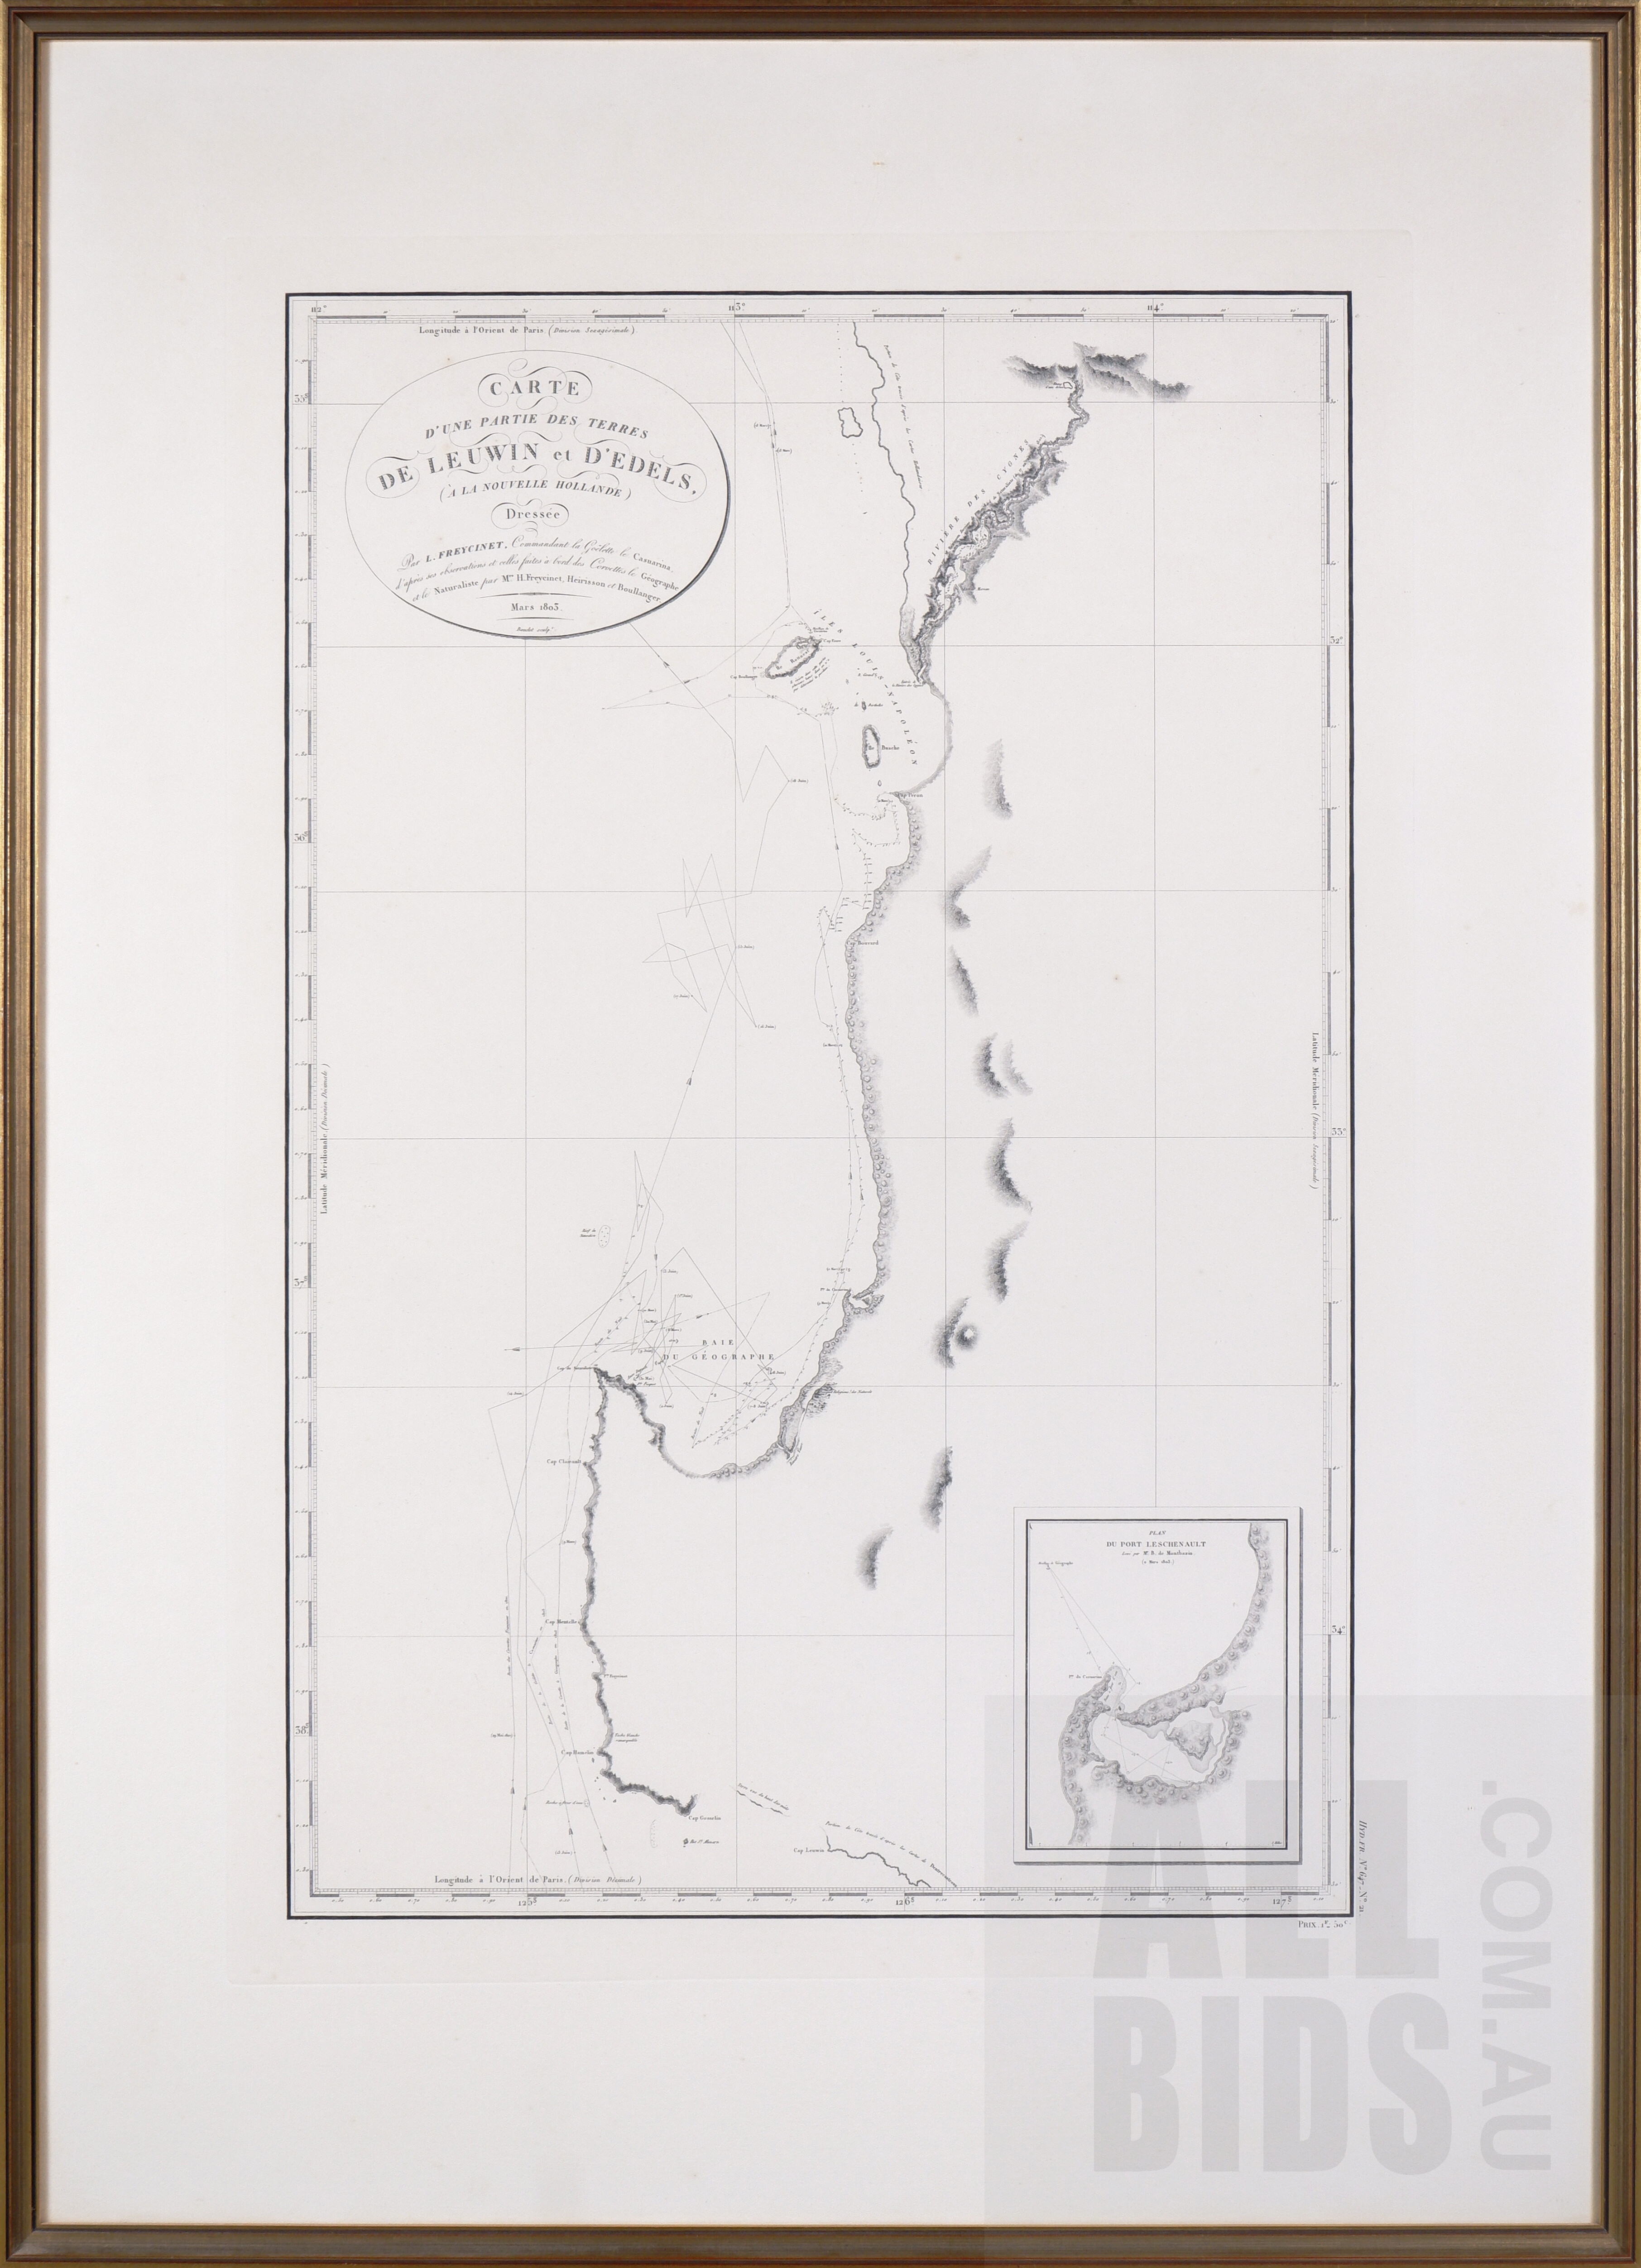 'Louis Claude Desaulses de Freycinet (French 1779-1842) Carte dune partie des Terres de Leuwin et dEdels (a la Nouvelle Hollande) 1803, Published Paris 1812'